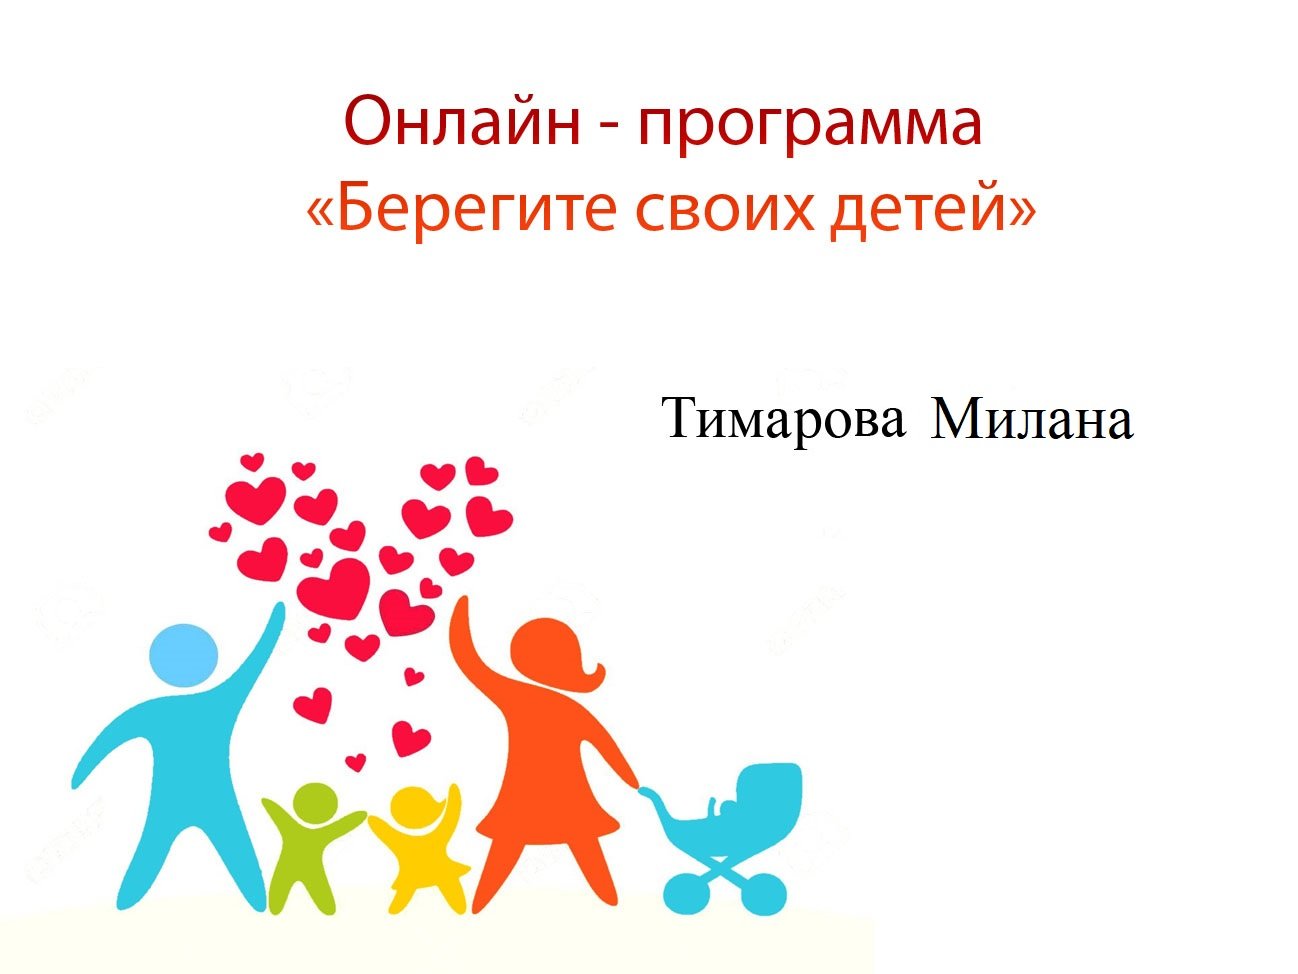 Тимарова Милана стих. "1 июня" - программа "Берегите своих детей"